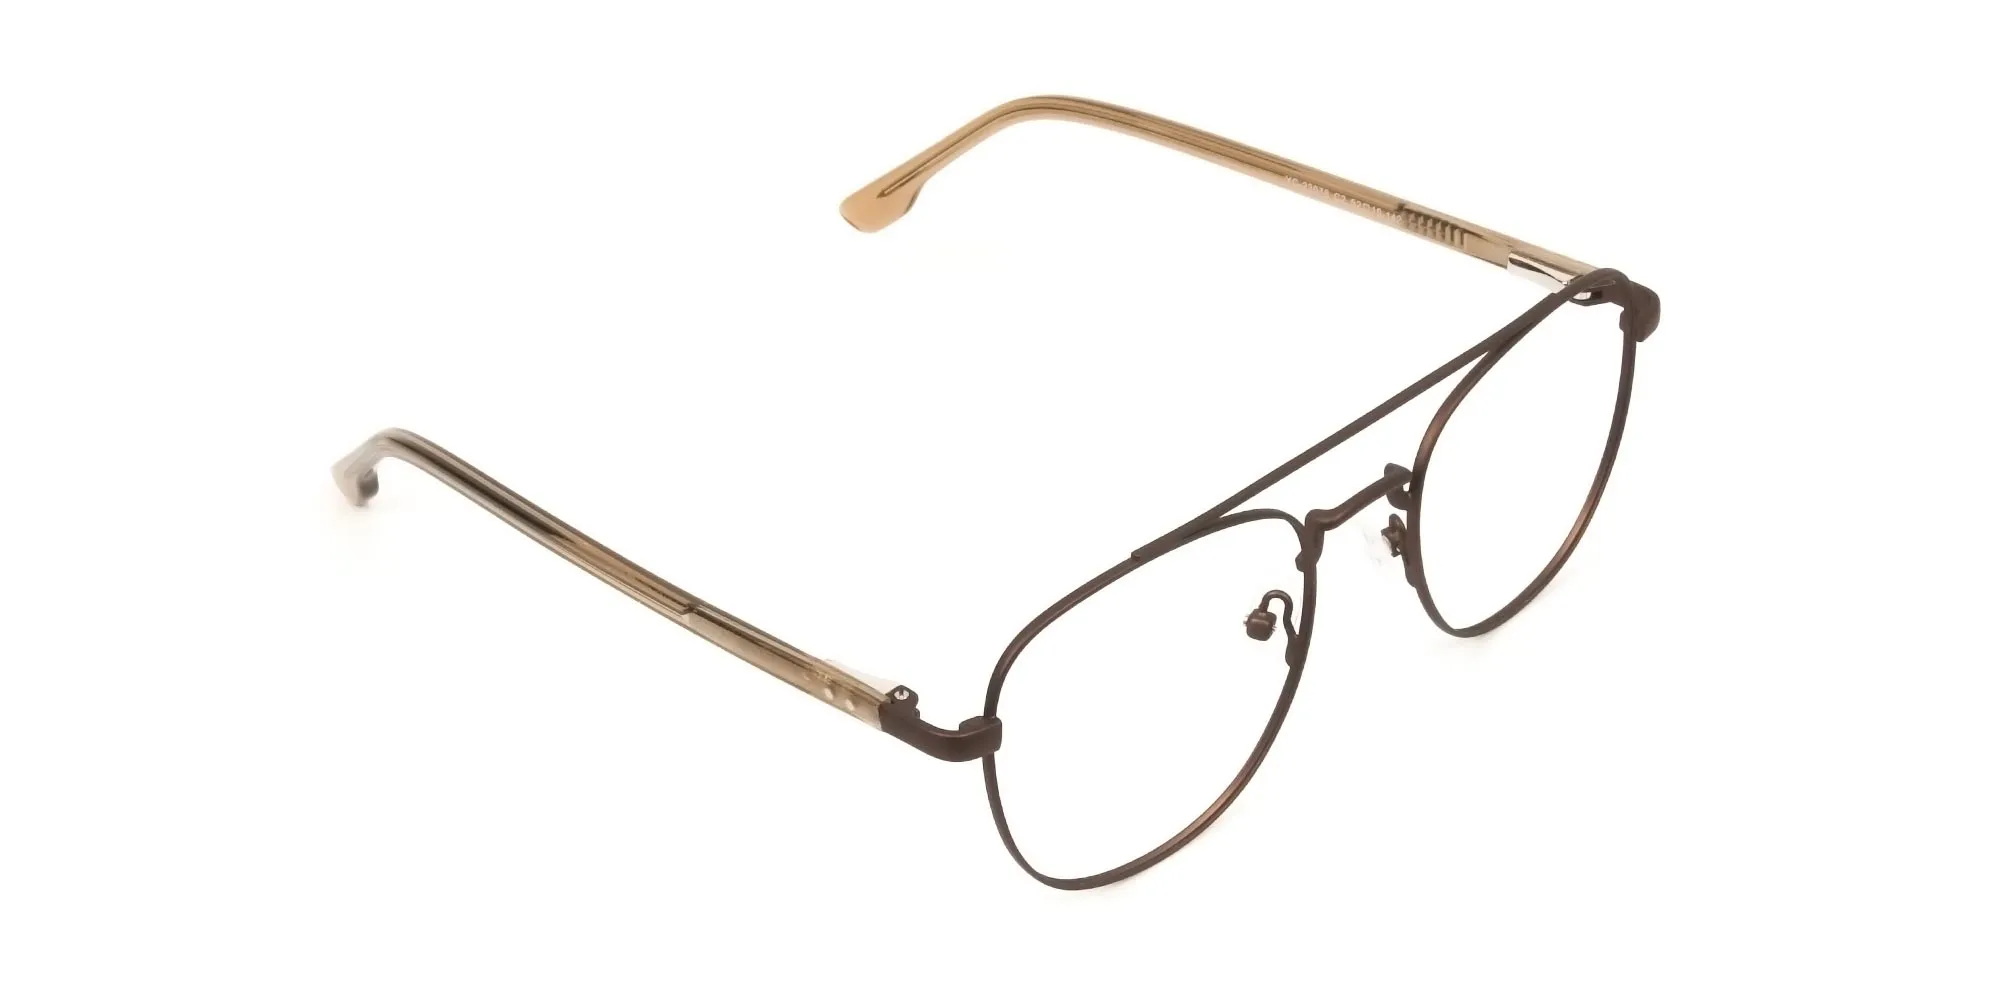 Honey Brown Aviator Wayfarer Glasses in Metal - 2